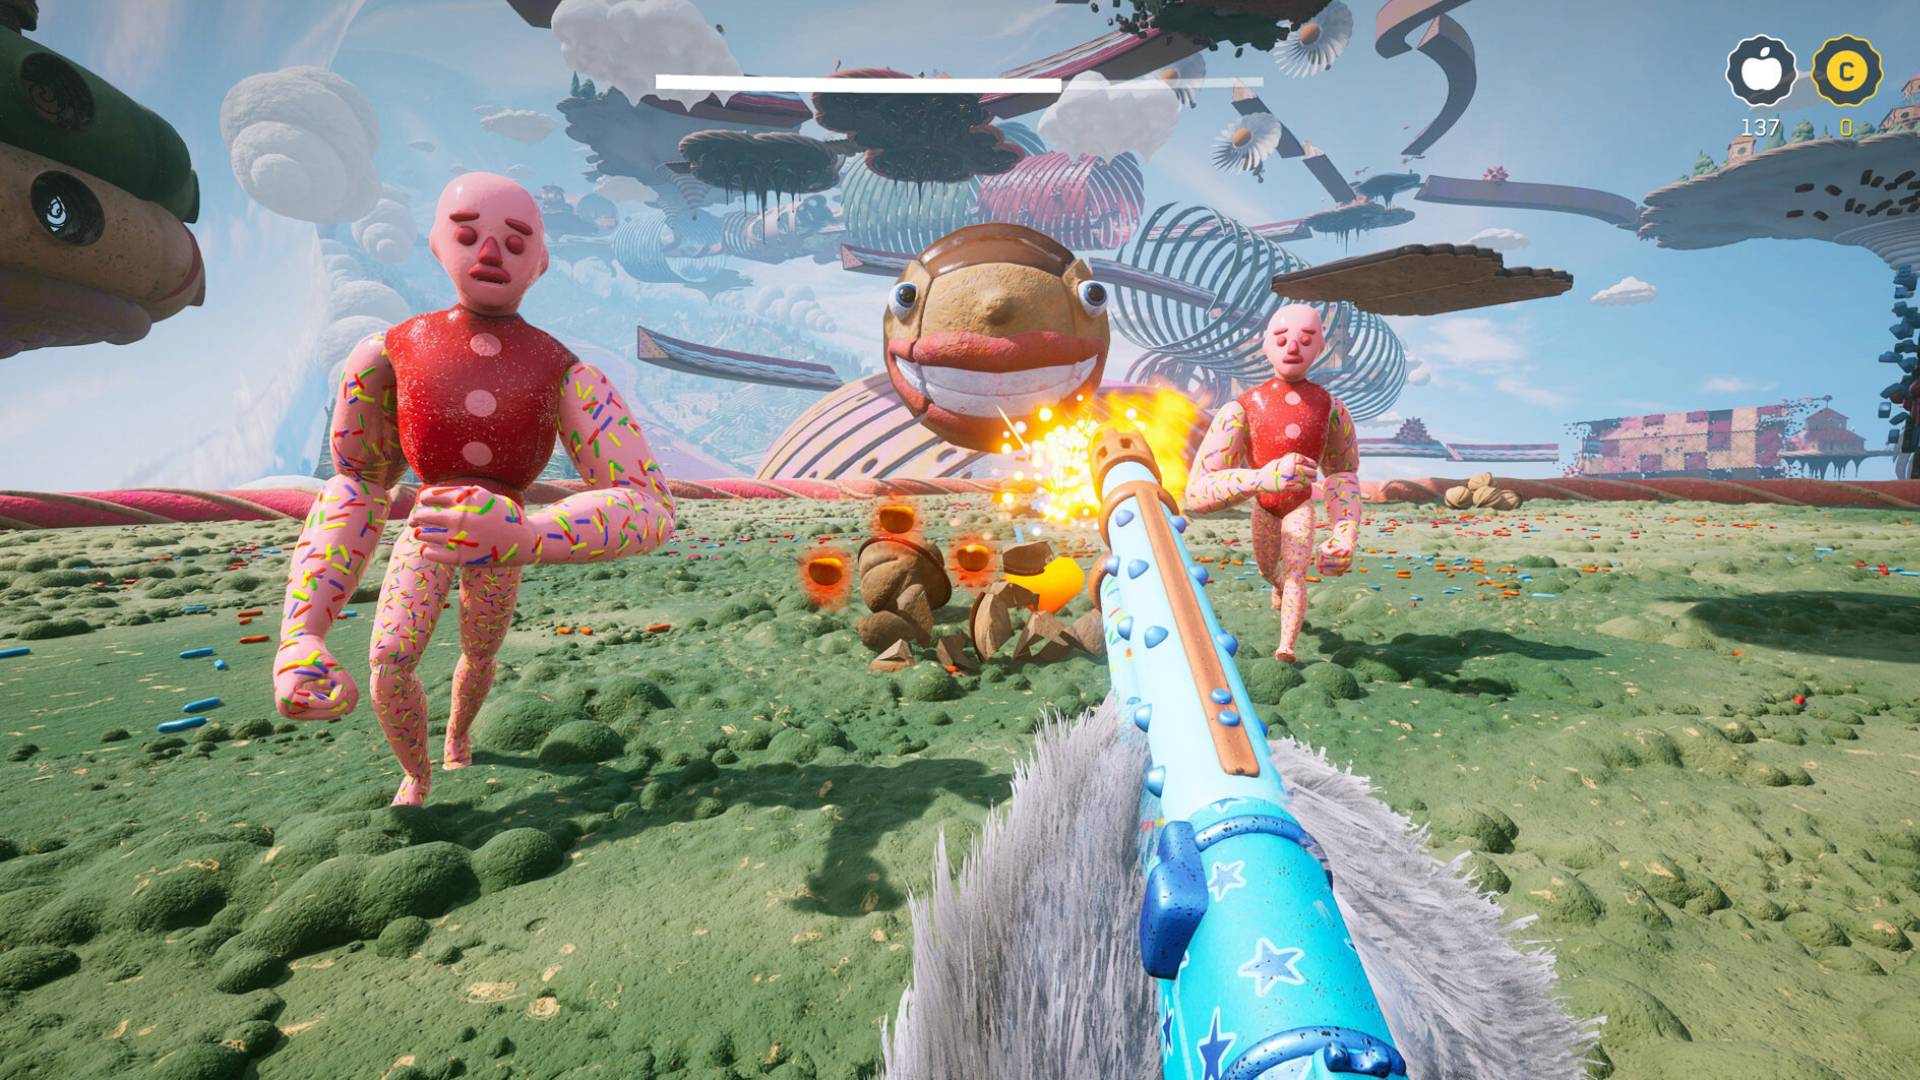 Le nouveau DLC d'Atomic Heart est un pastel "Google Tag" monde, où vous êtes poilu : une créature à fourrure avec un pistolet bleu vif tire sur des ennemis colorés dans un champ